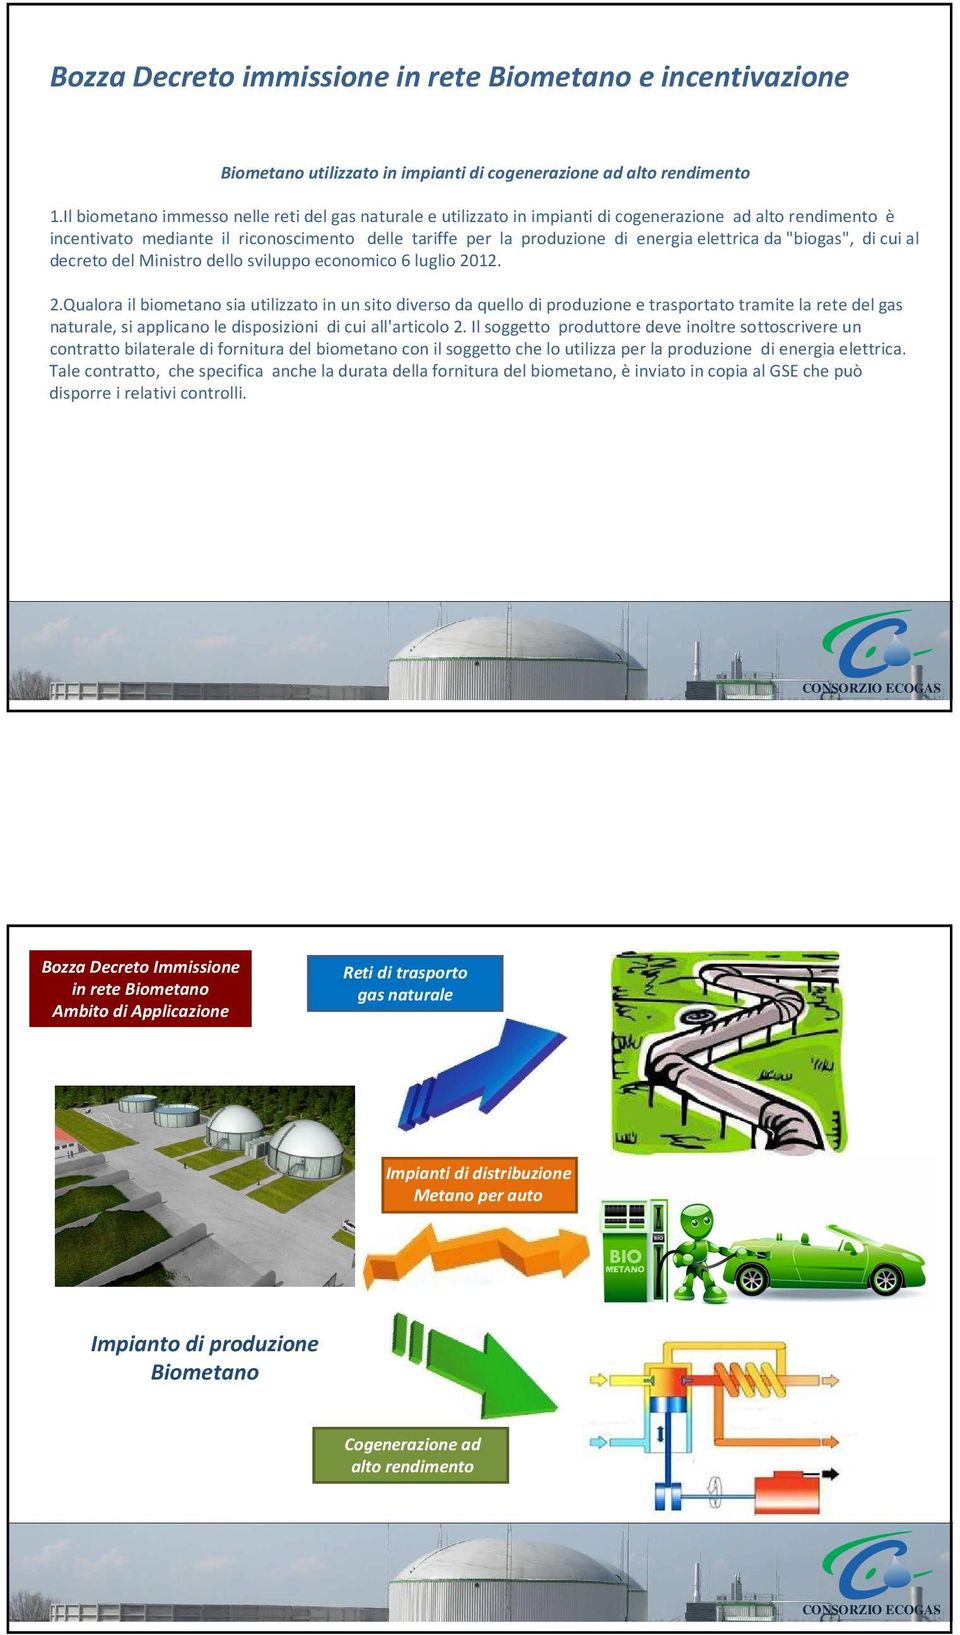 elettrica da "biogas", di cui al decreto del Ministro dello sviluppo economico 6 luglio 20